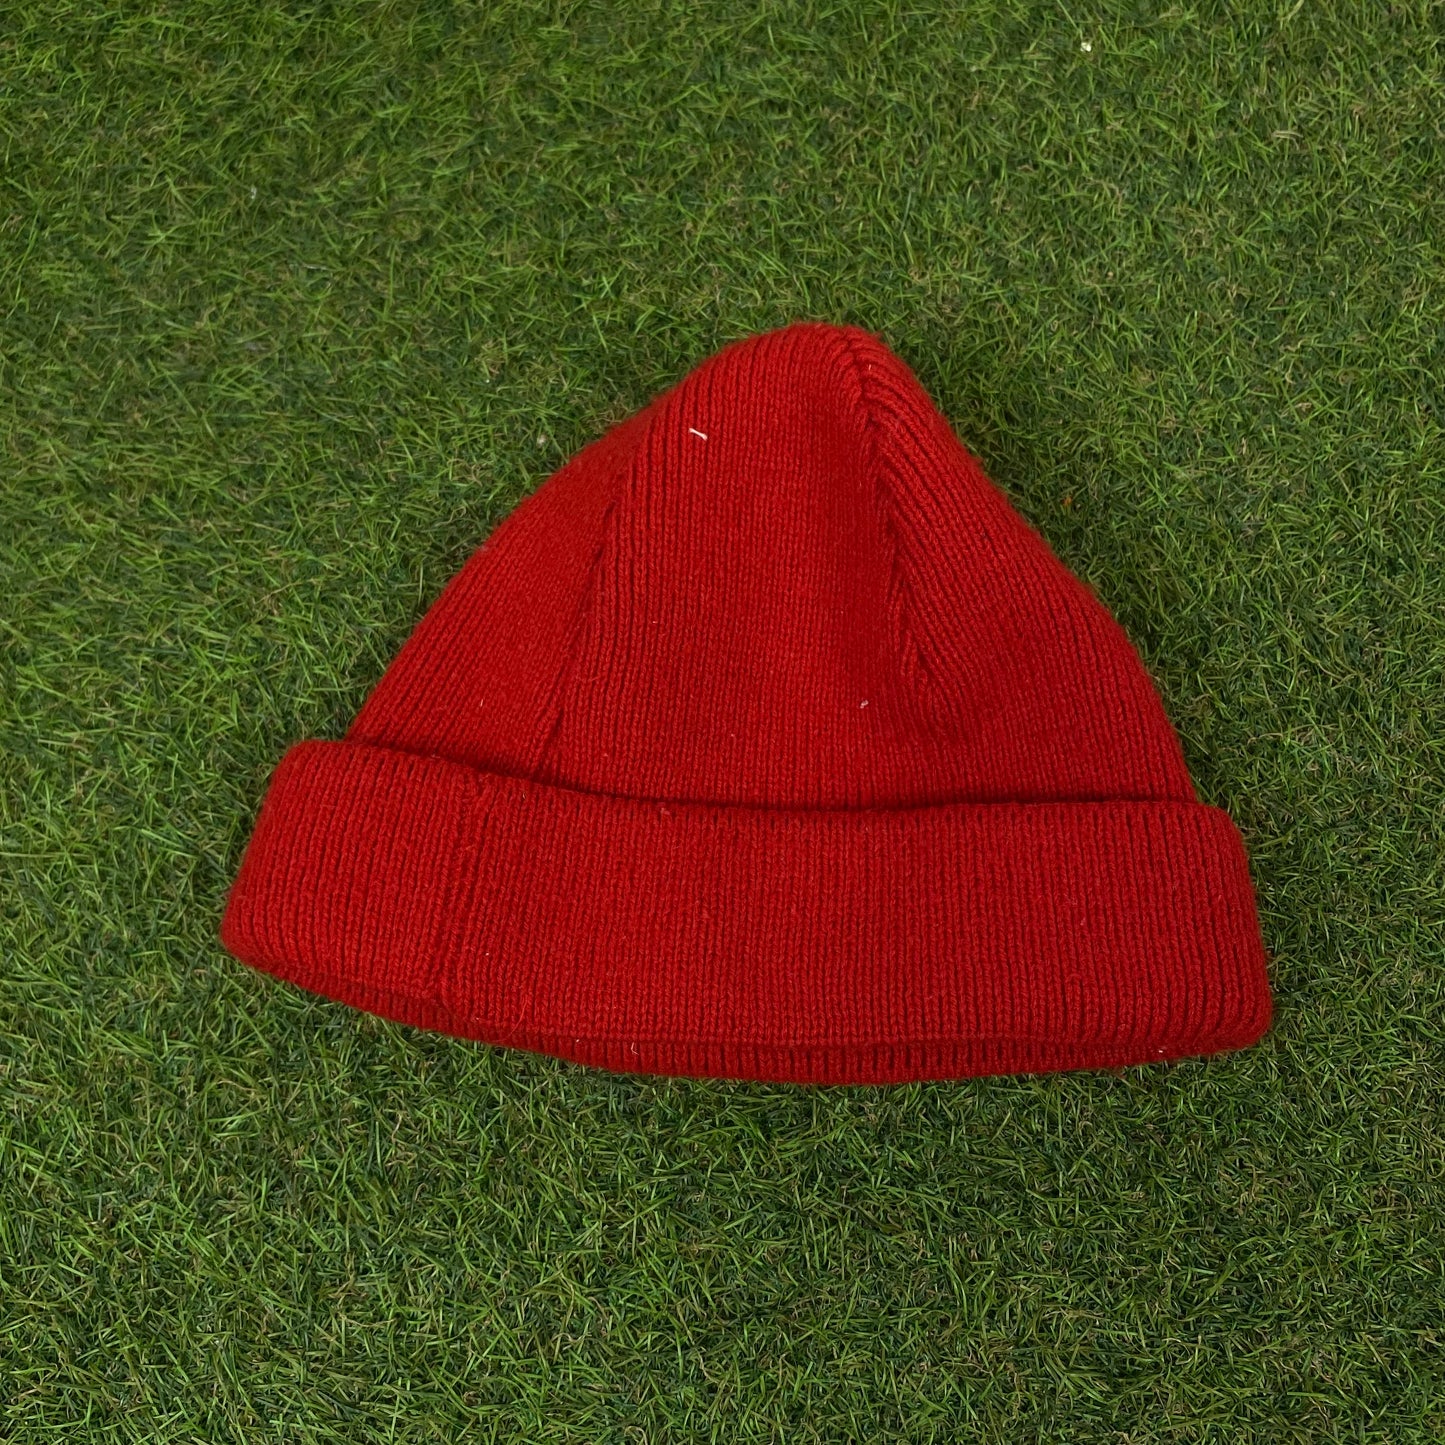 Vintage Champion Beanie Hat Red